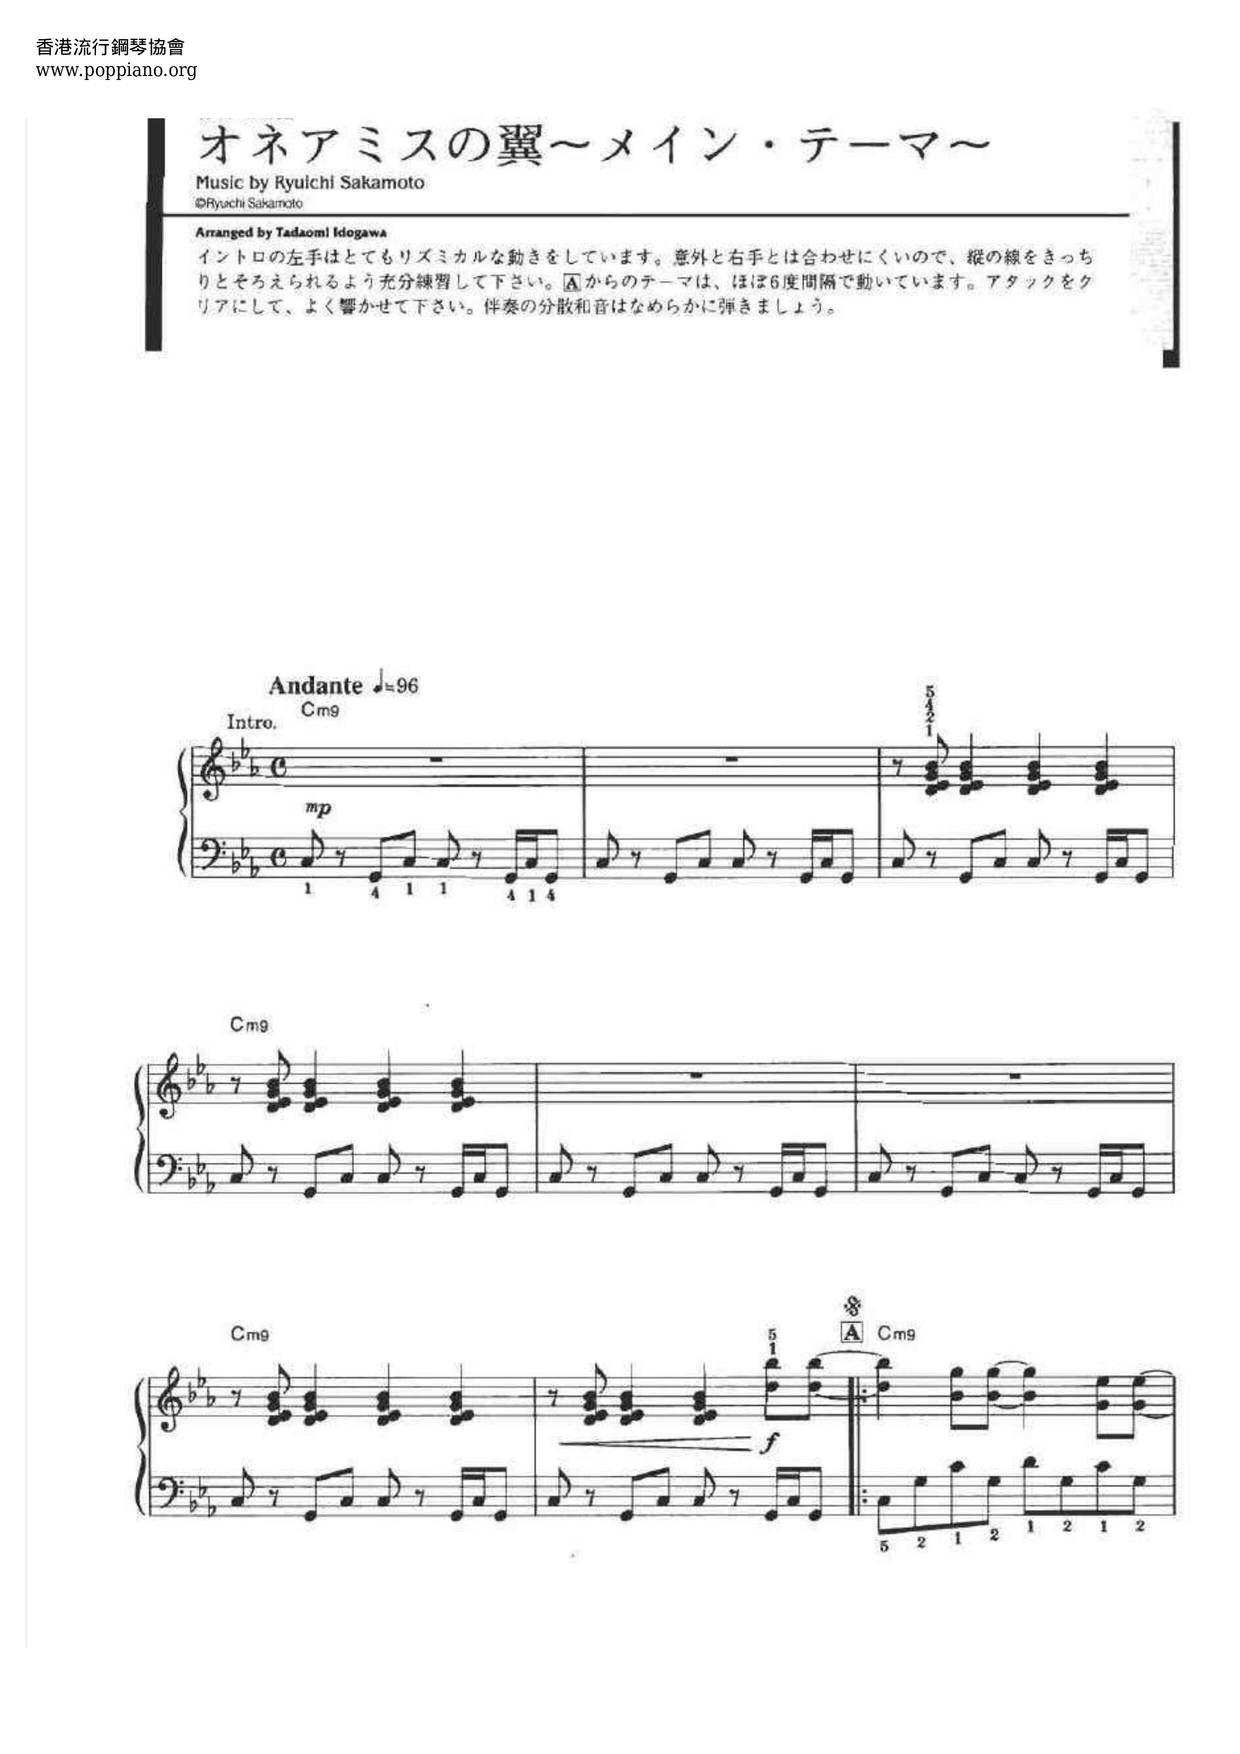 さかもと りゅういち オネアミスの翼 メイン テーマ ピアノ譜pdf 香港ポップピアノ協会 無料pdf楽譜ダウンロード Gakufu